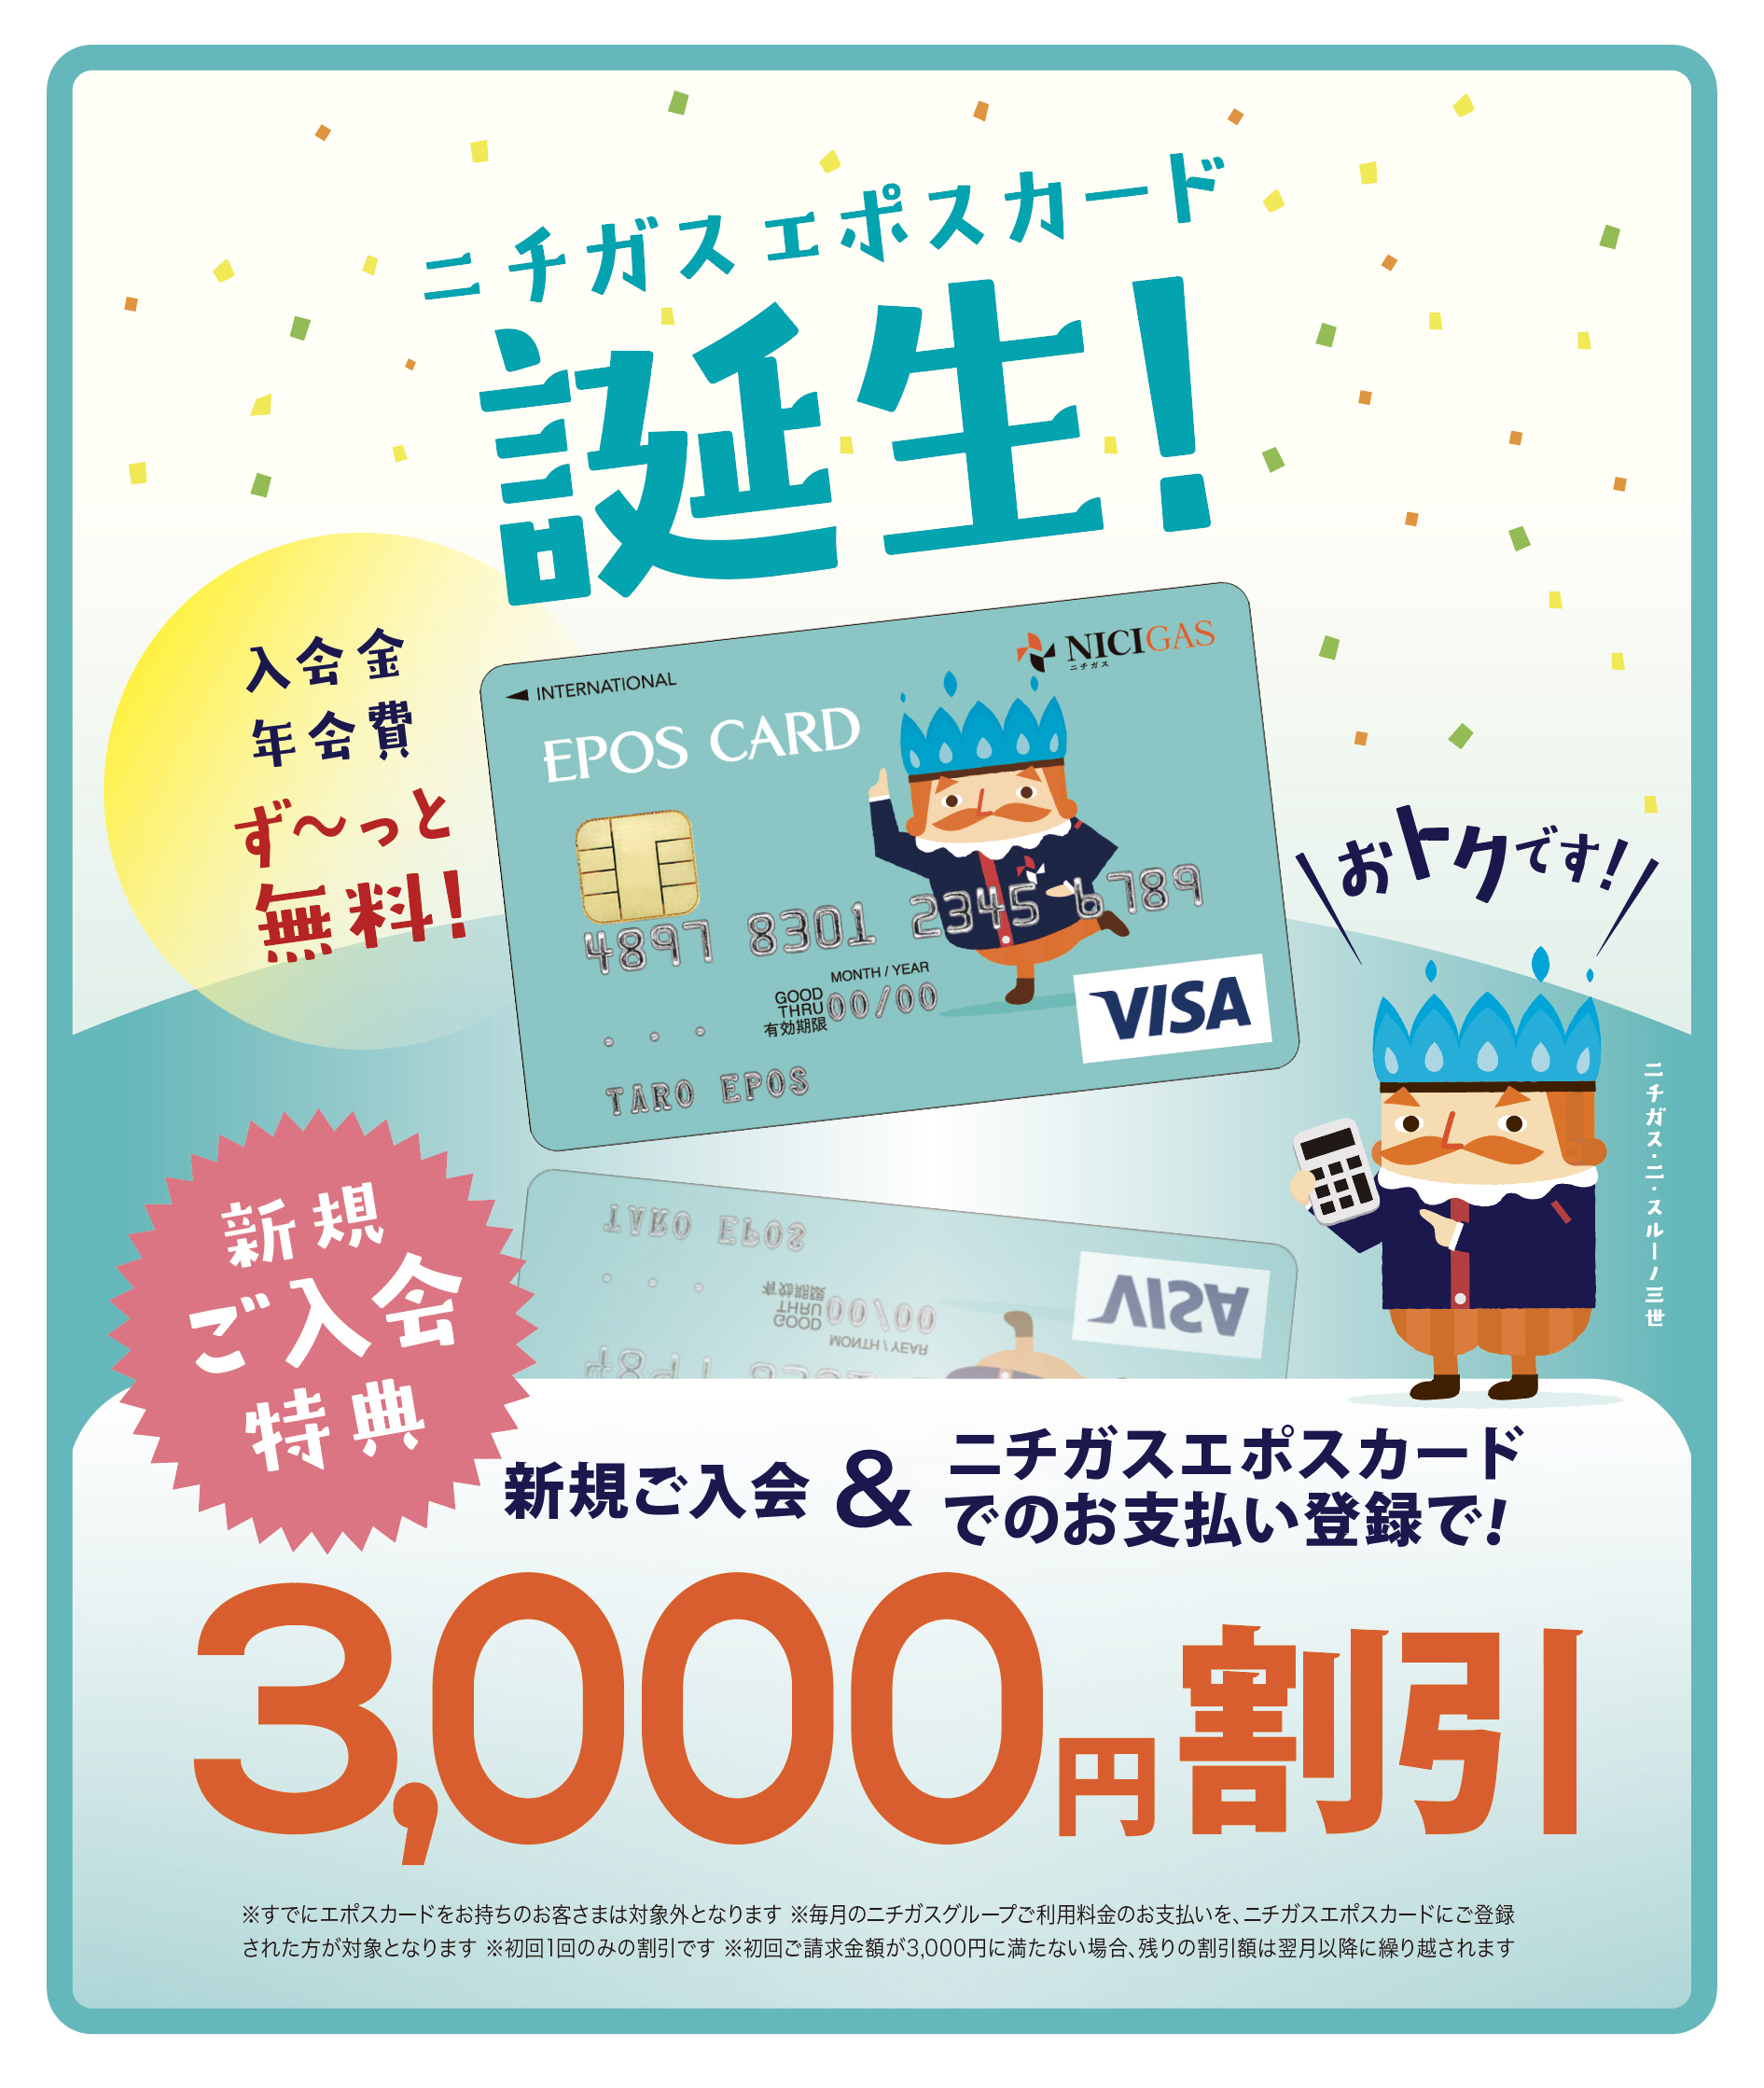 エポスカードの新規提携カード「ニチガスエポスカード」が６月１４日（金）より発行スタート